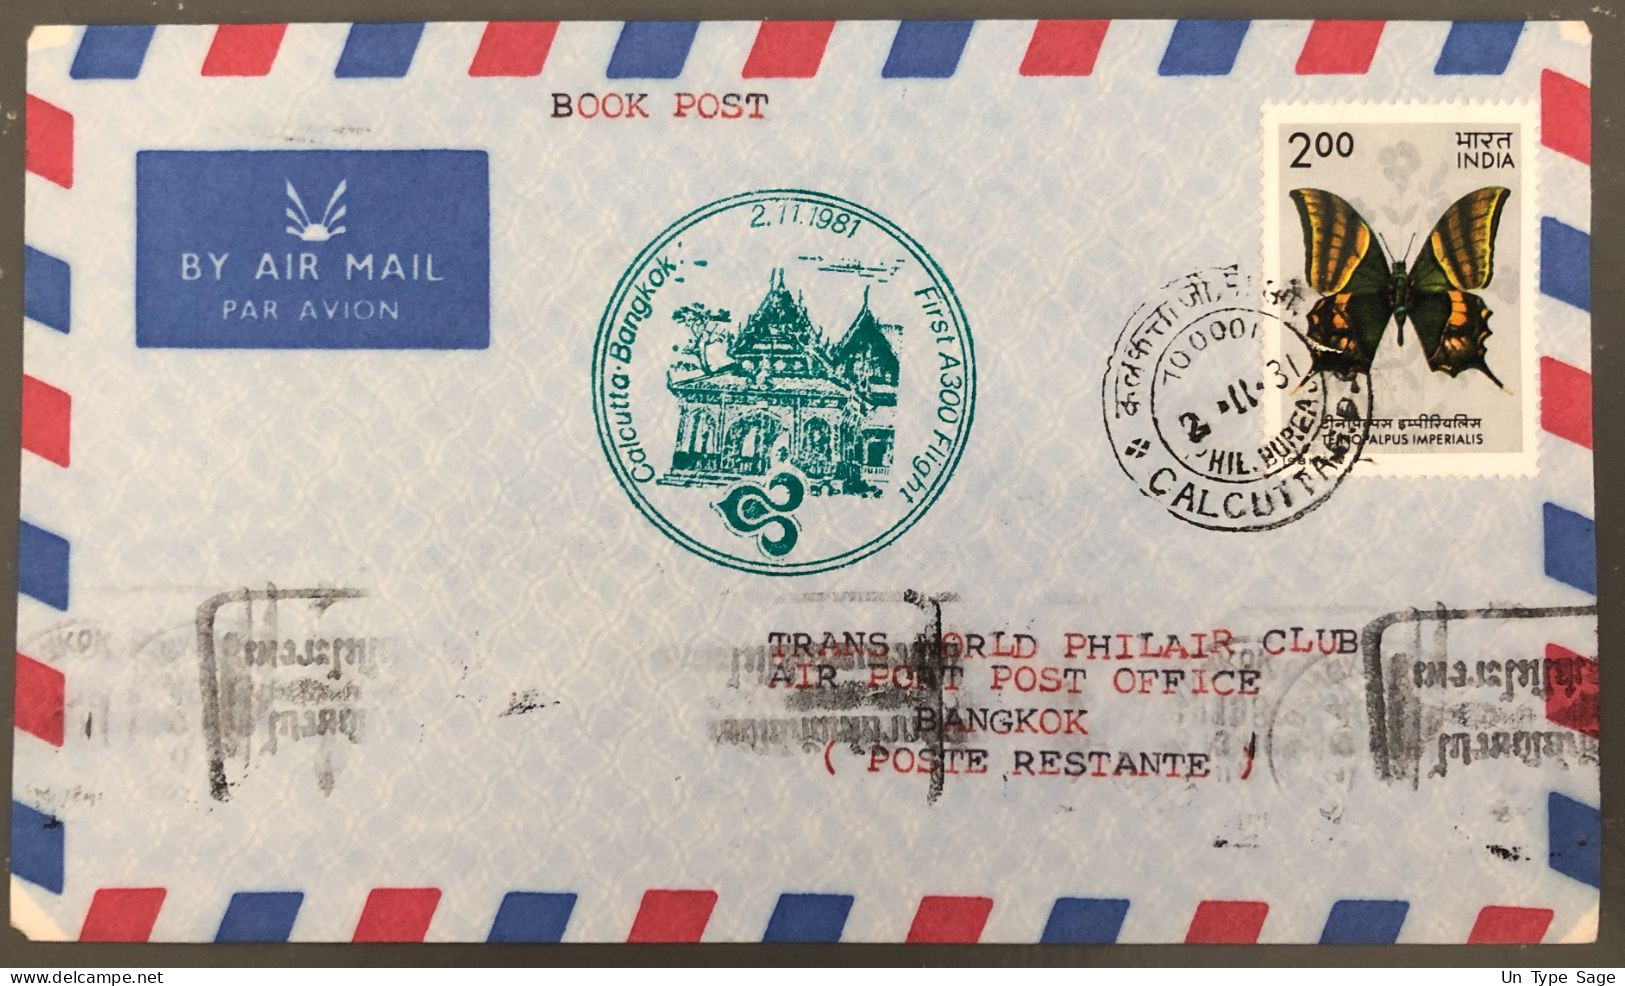 France, Premier Vol Calcutta, Bangkok 2.11.1981 - (B1528) - Airmail